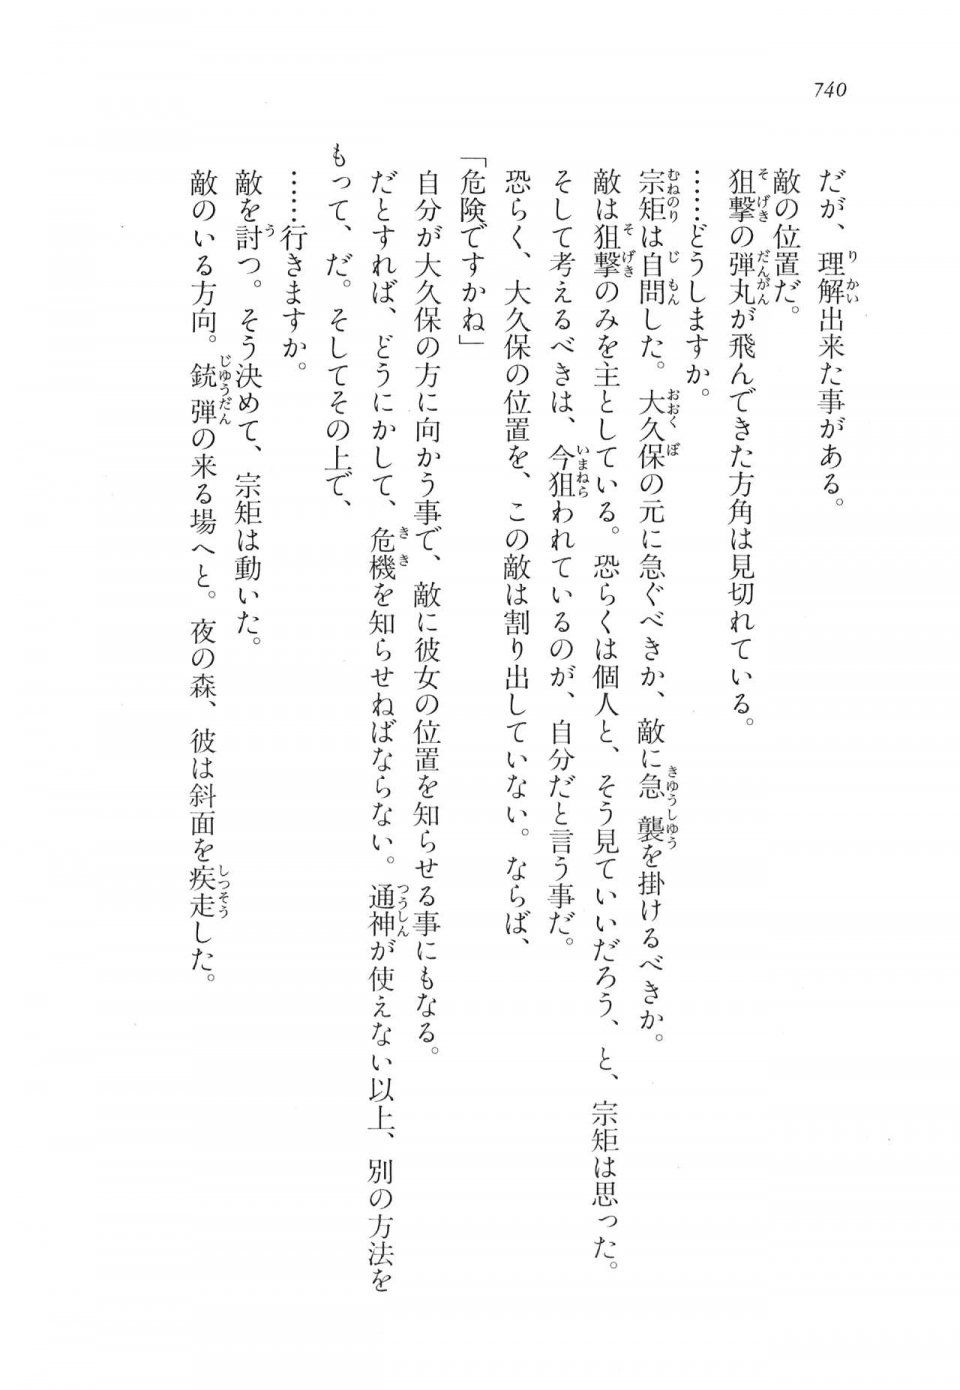 Kyoukai Senjou no Horizon LN Vol 17(7B) - Photo #742